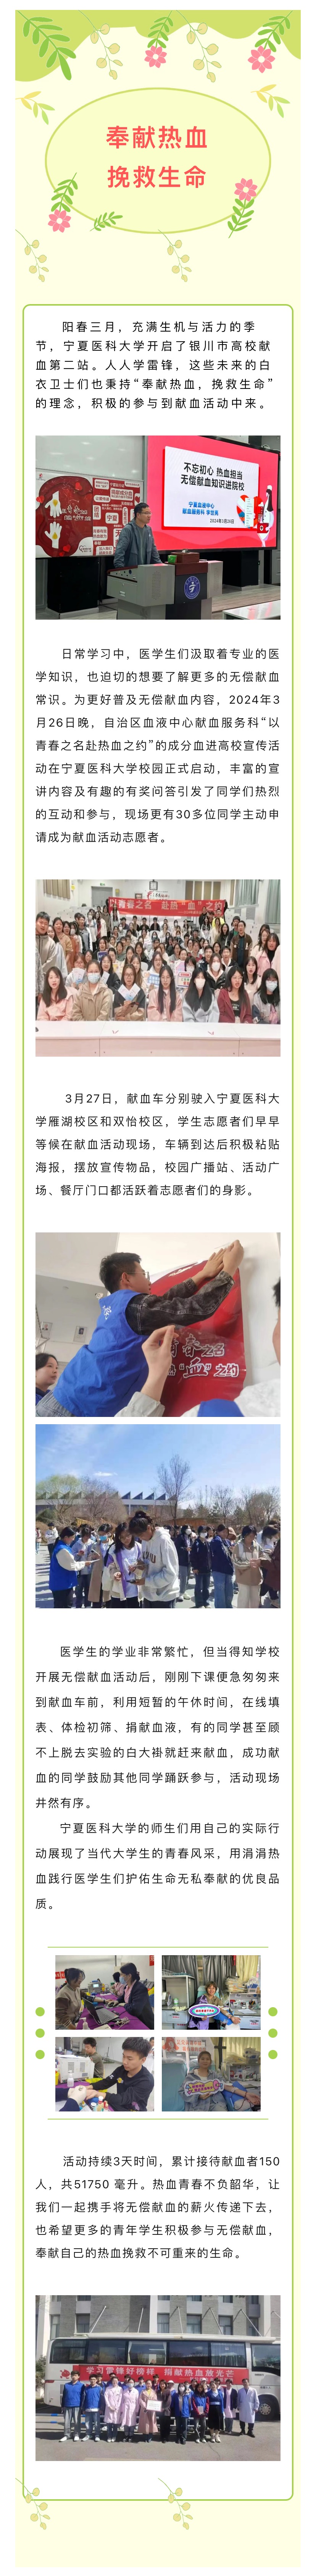 高校献血第二站|宁夏医科大学无偿献血活动(图1)